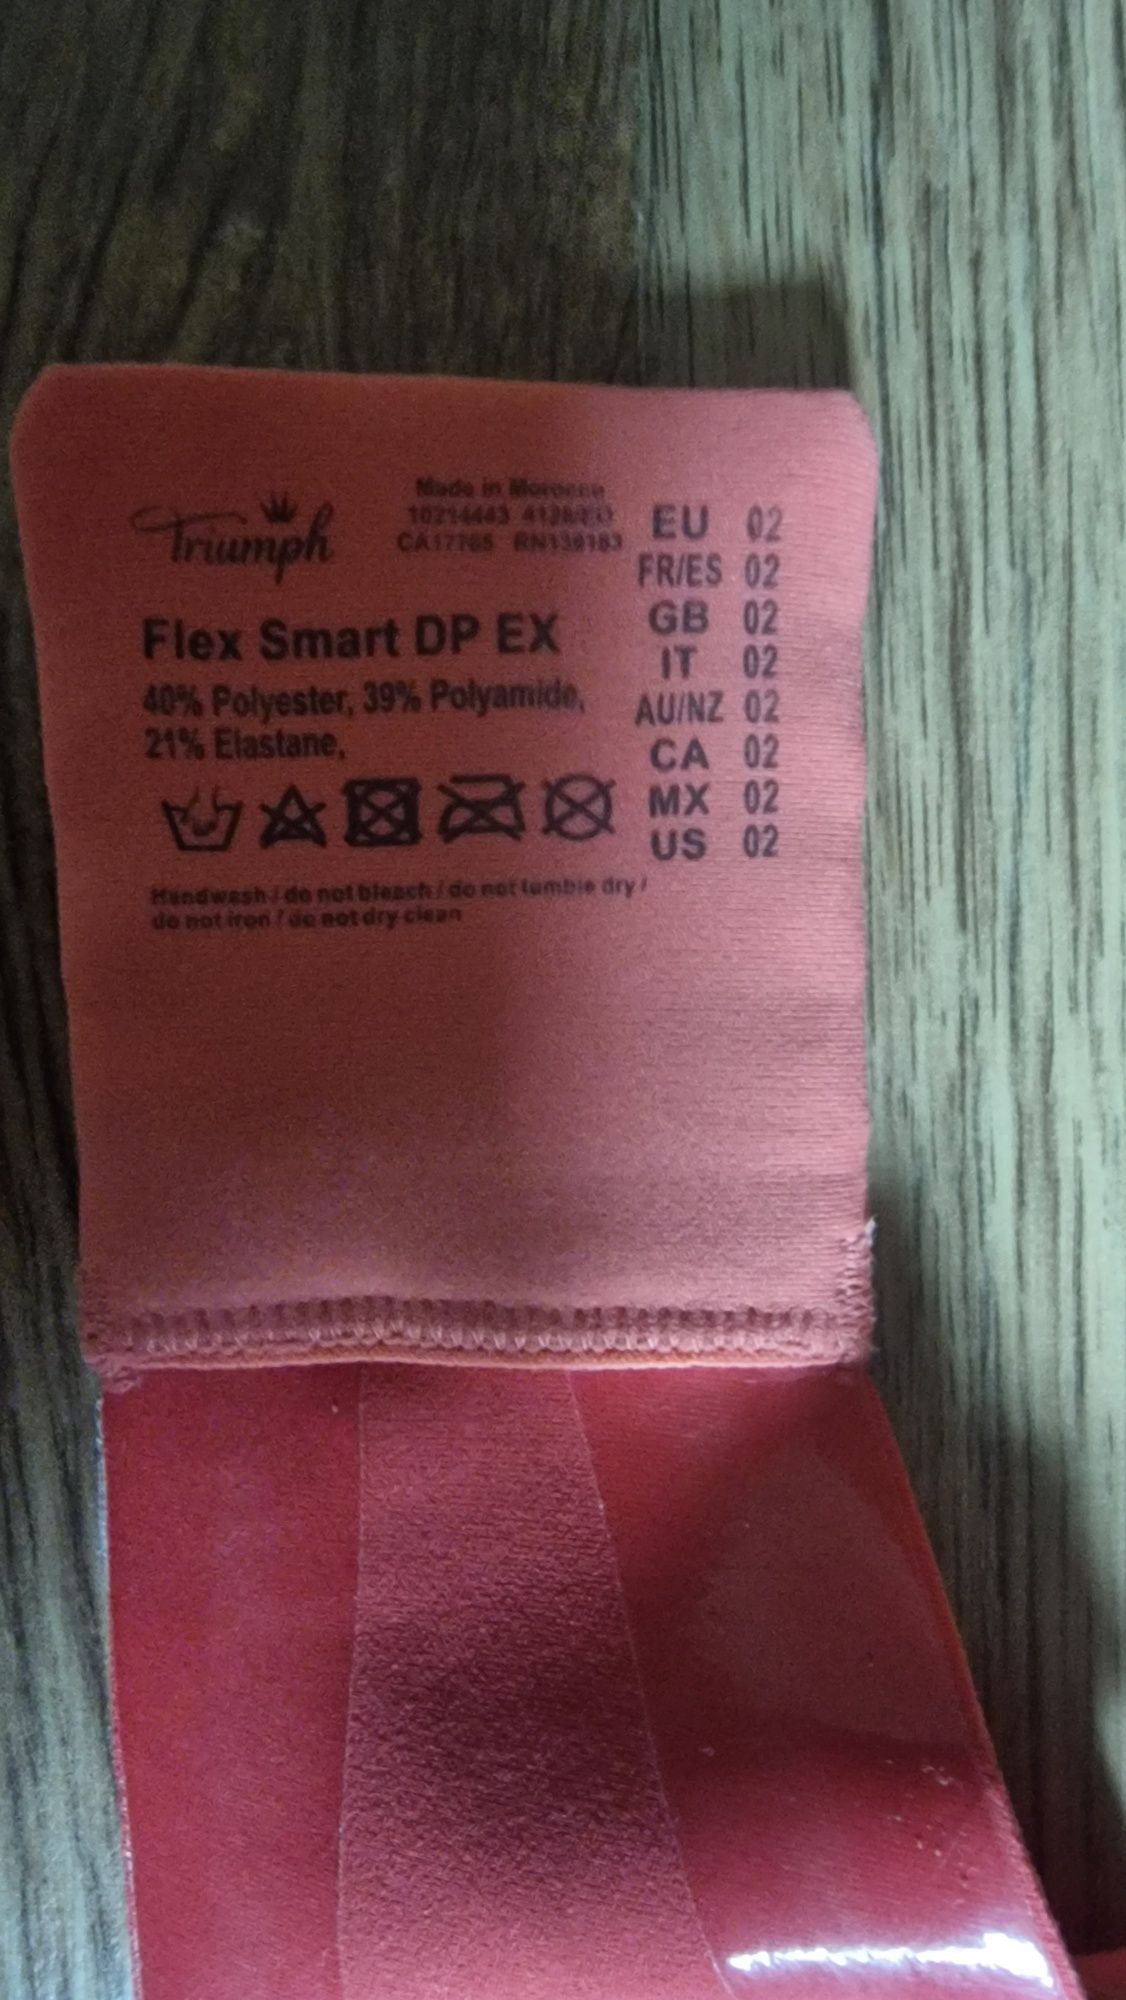 Triumph biustonosz usztywniany różowy Flex  Smart DP EX rozmiar uniwer